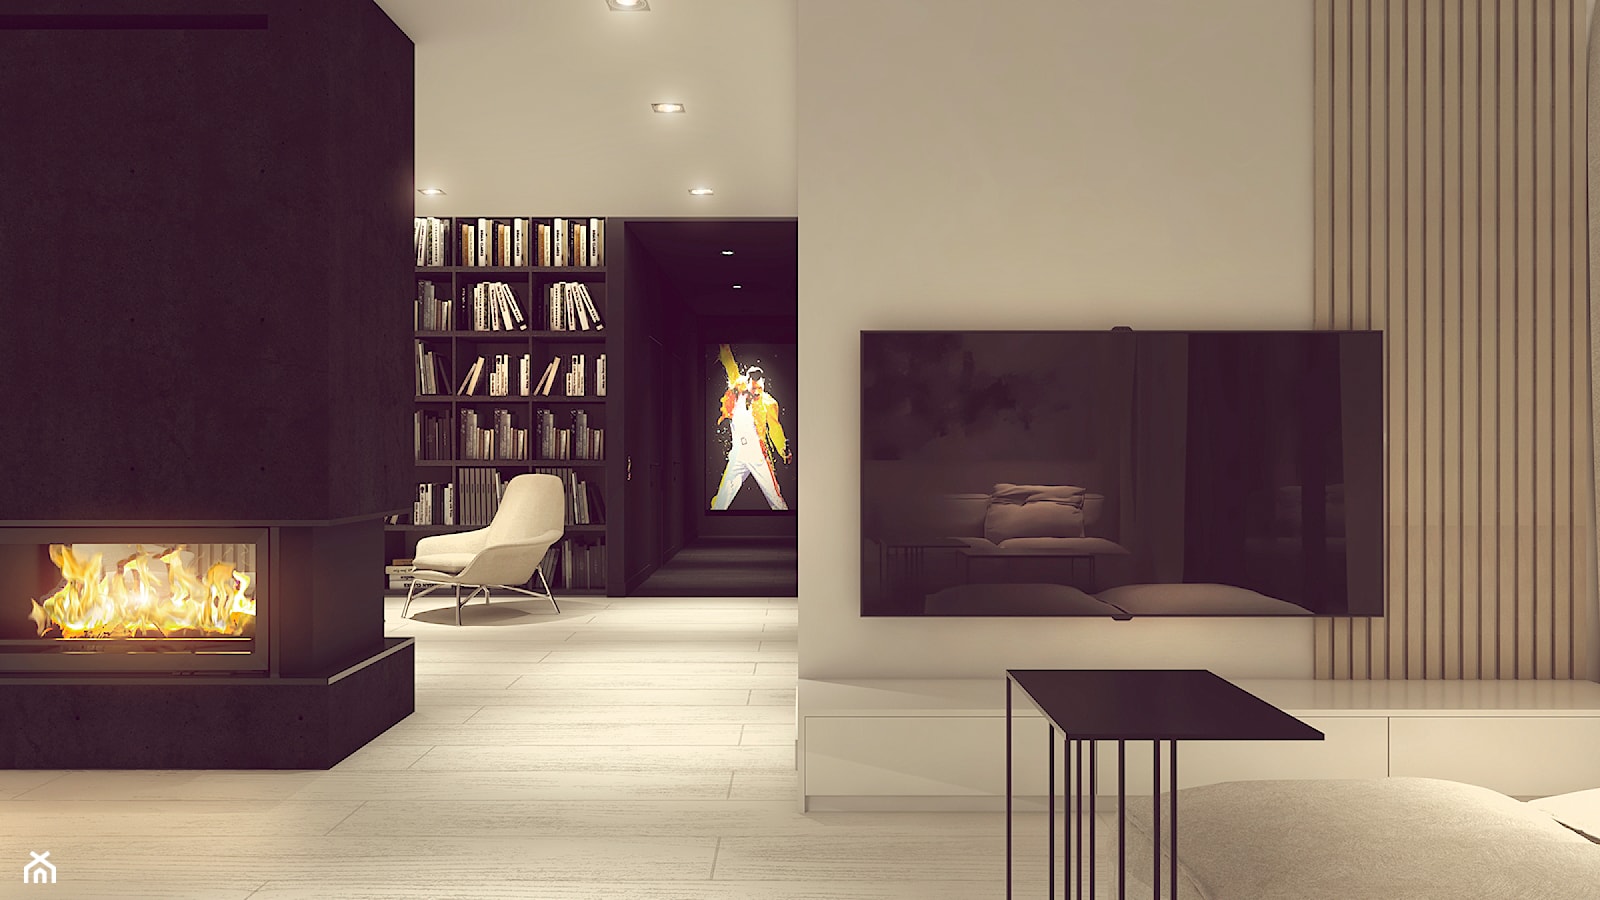 POP ART HOUSE - Salon, styl minimalistyczny - zdjęcie od CUDO STUDIO - Homebook